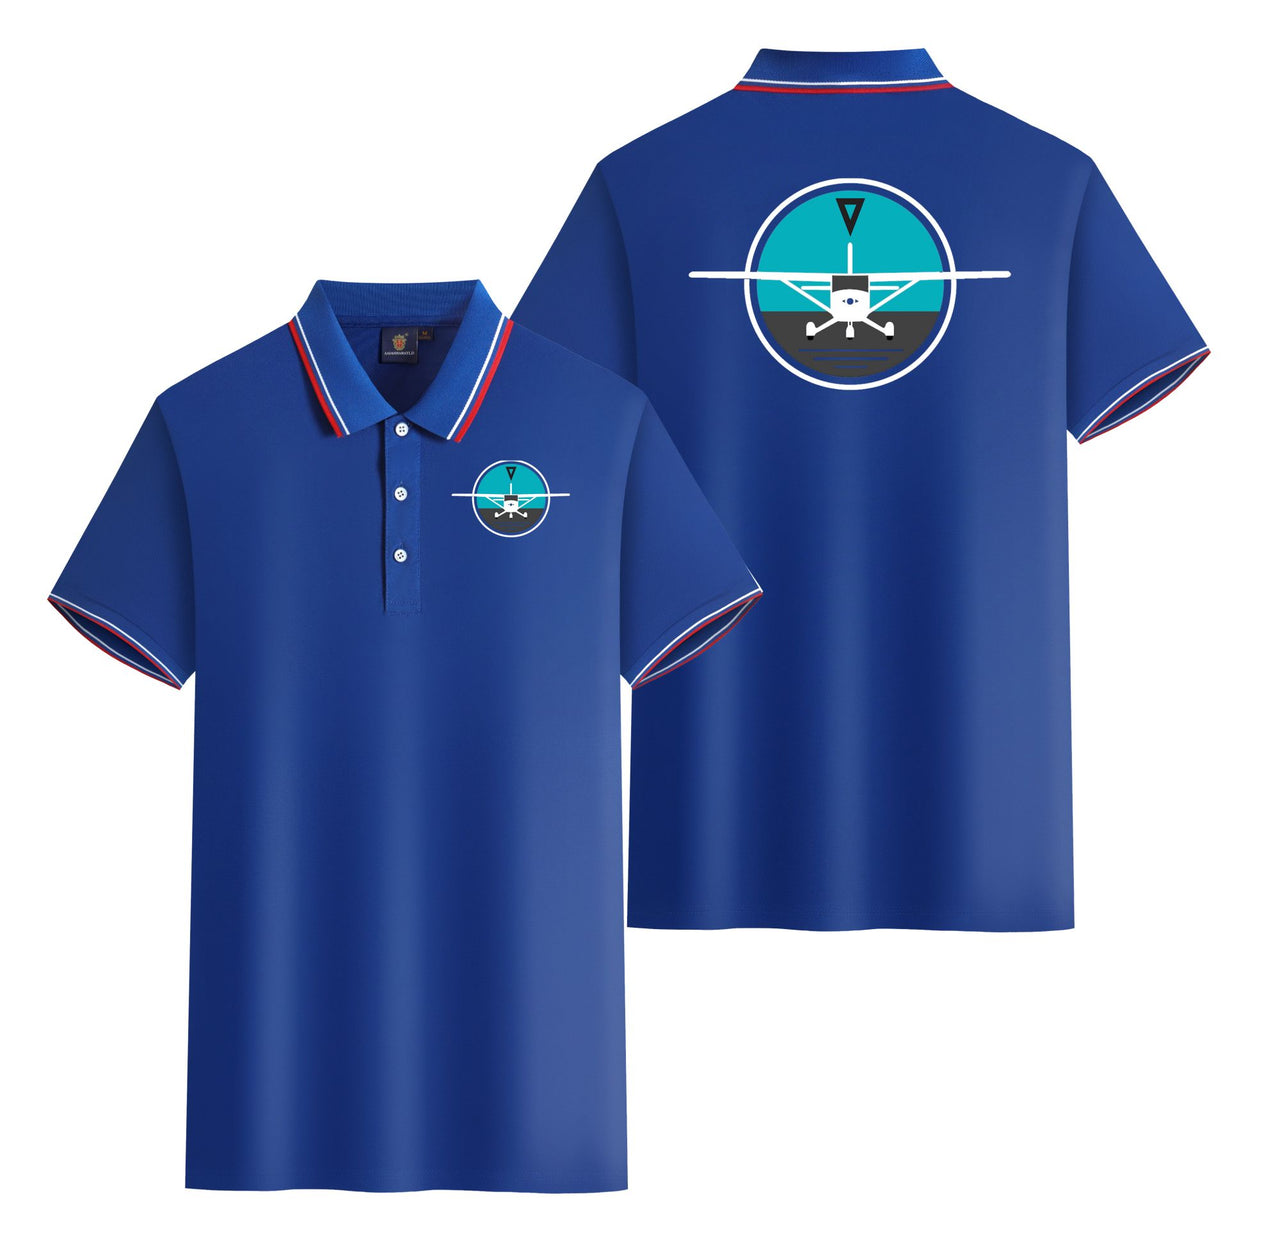 Cessna & Gyro Designed Stylish Polo T-Shirts (Double-Side)